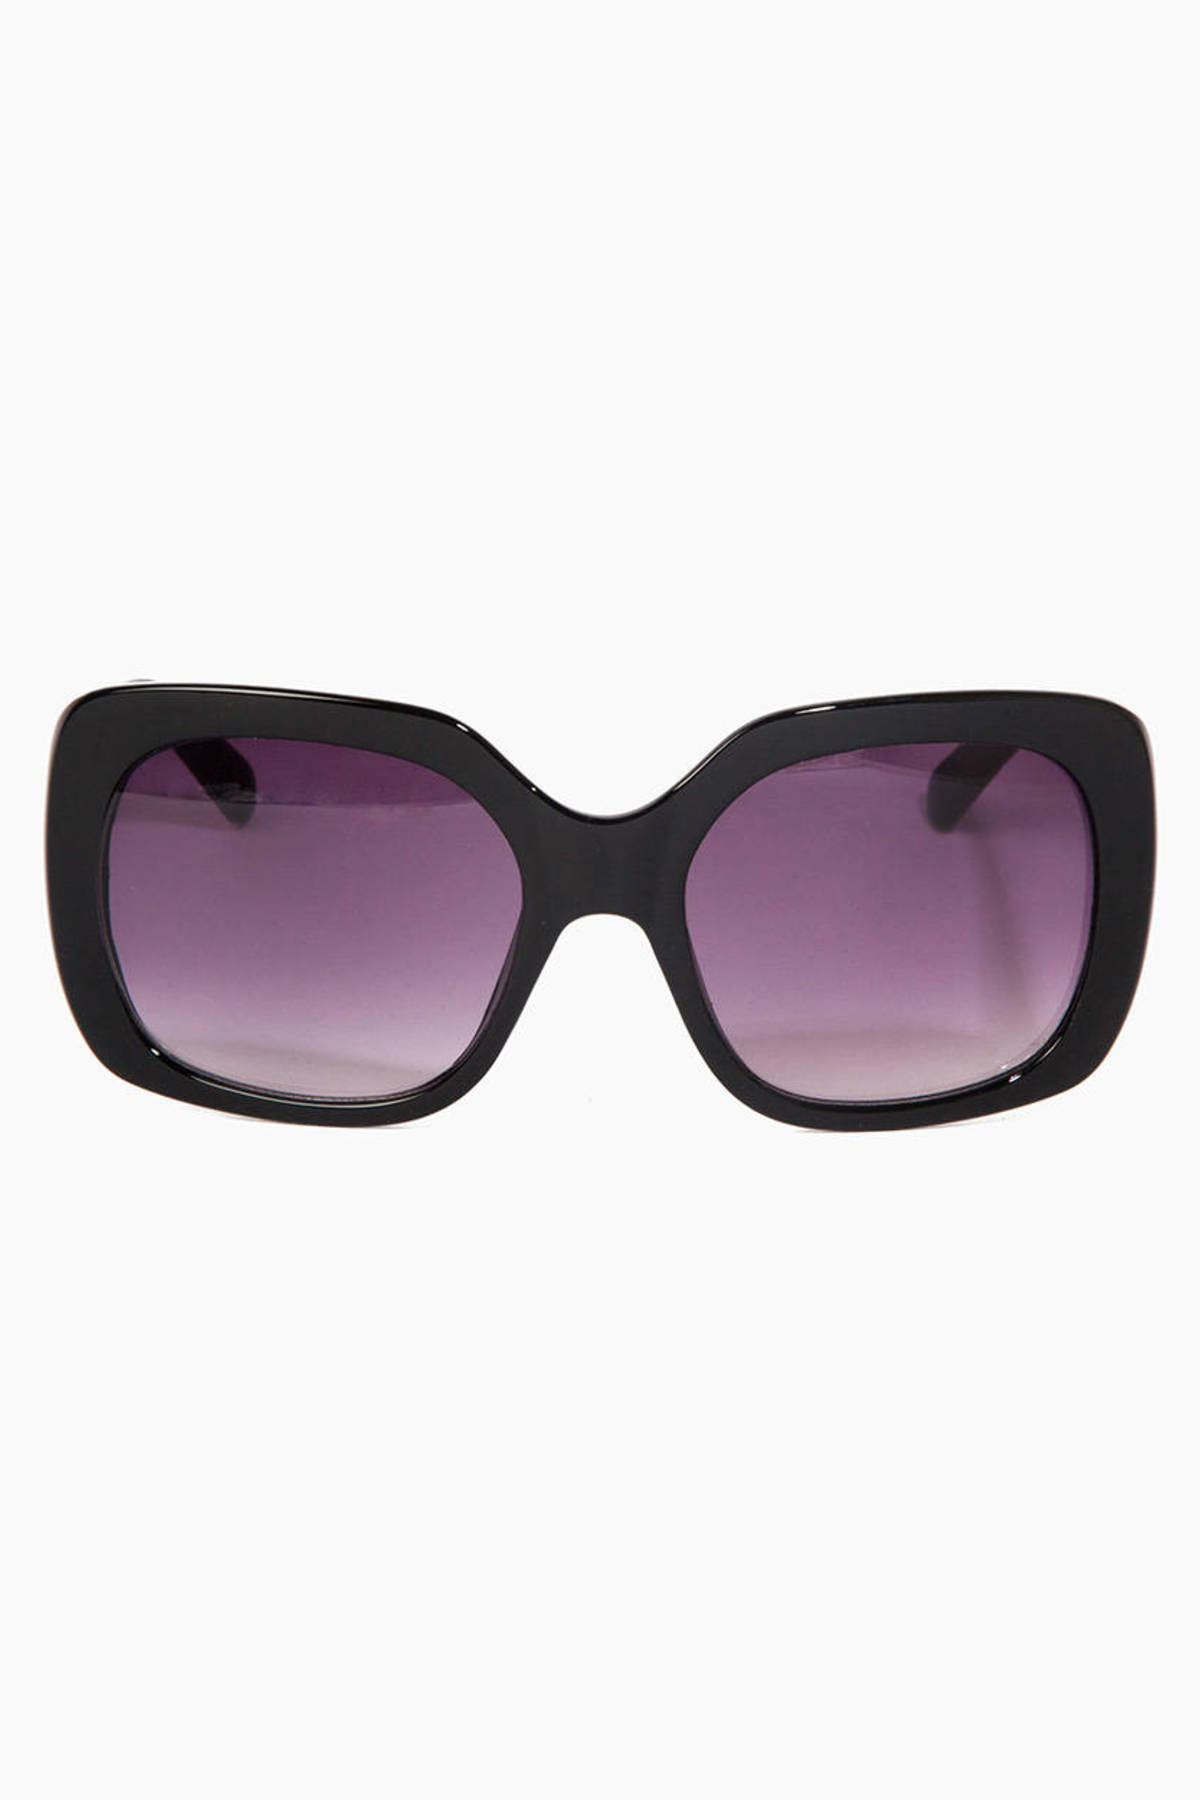 Sunglasses | Cheap Sunglasses, Cute Sunglasses | Tobi